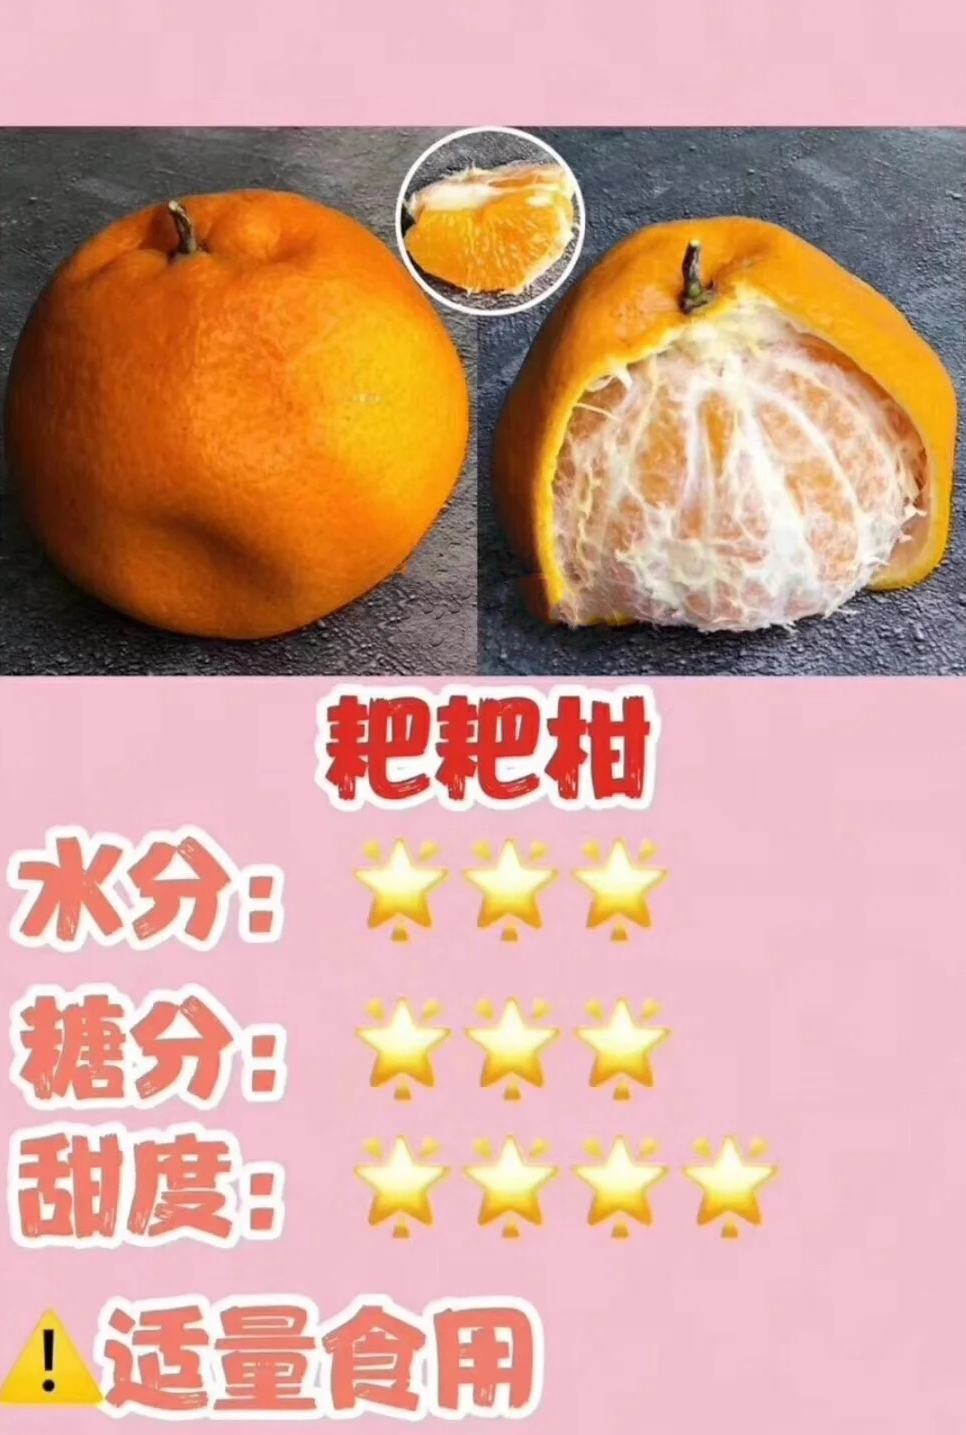 丑橘和粑粑柑,究竟有什么区别?掌握这3点,果贩再也骗不了你